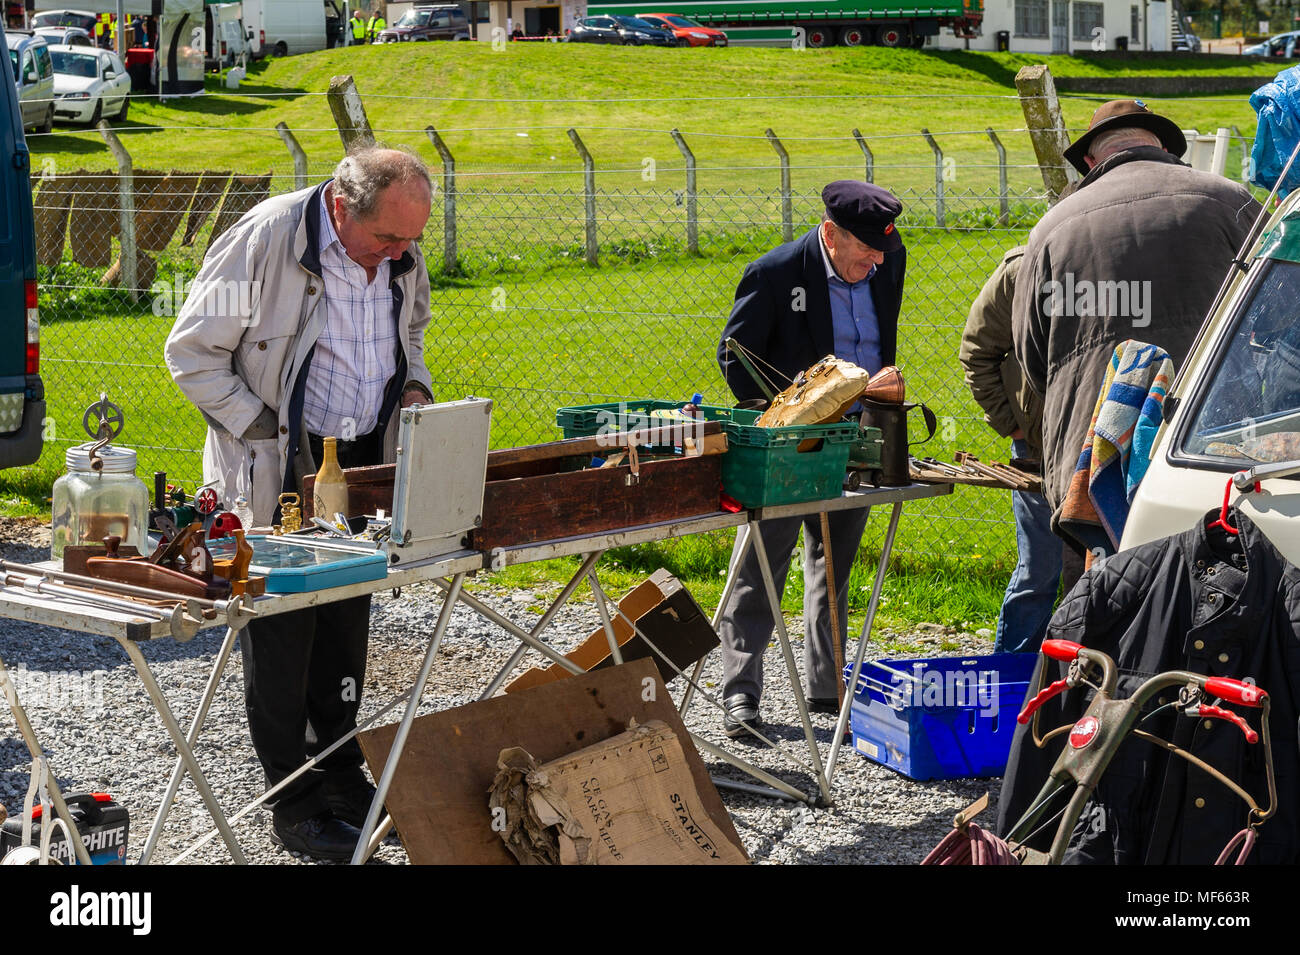 Gli uomini alla ricerca in una fase di stallo ad un auto boot vendita in una giornata di sole in Bandon, County Cork, Irlanda. Foto Stock